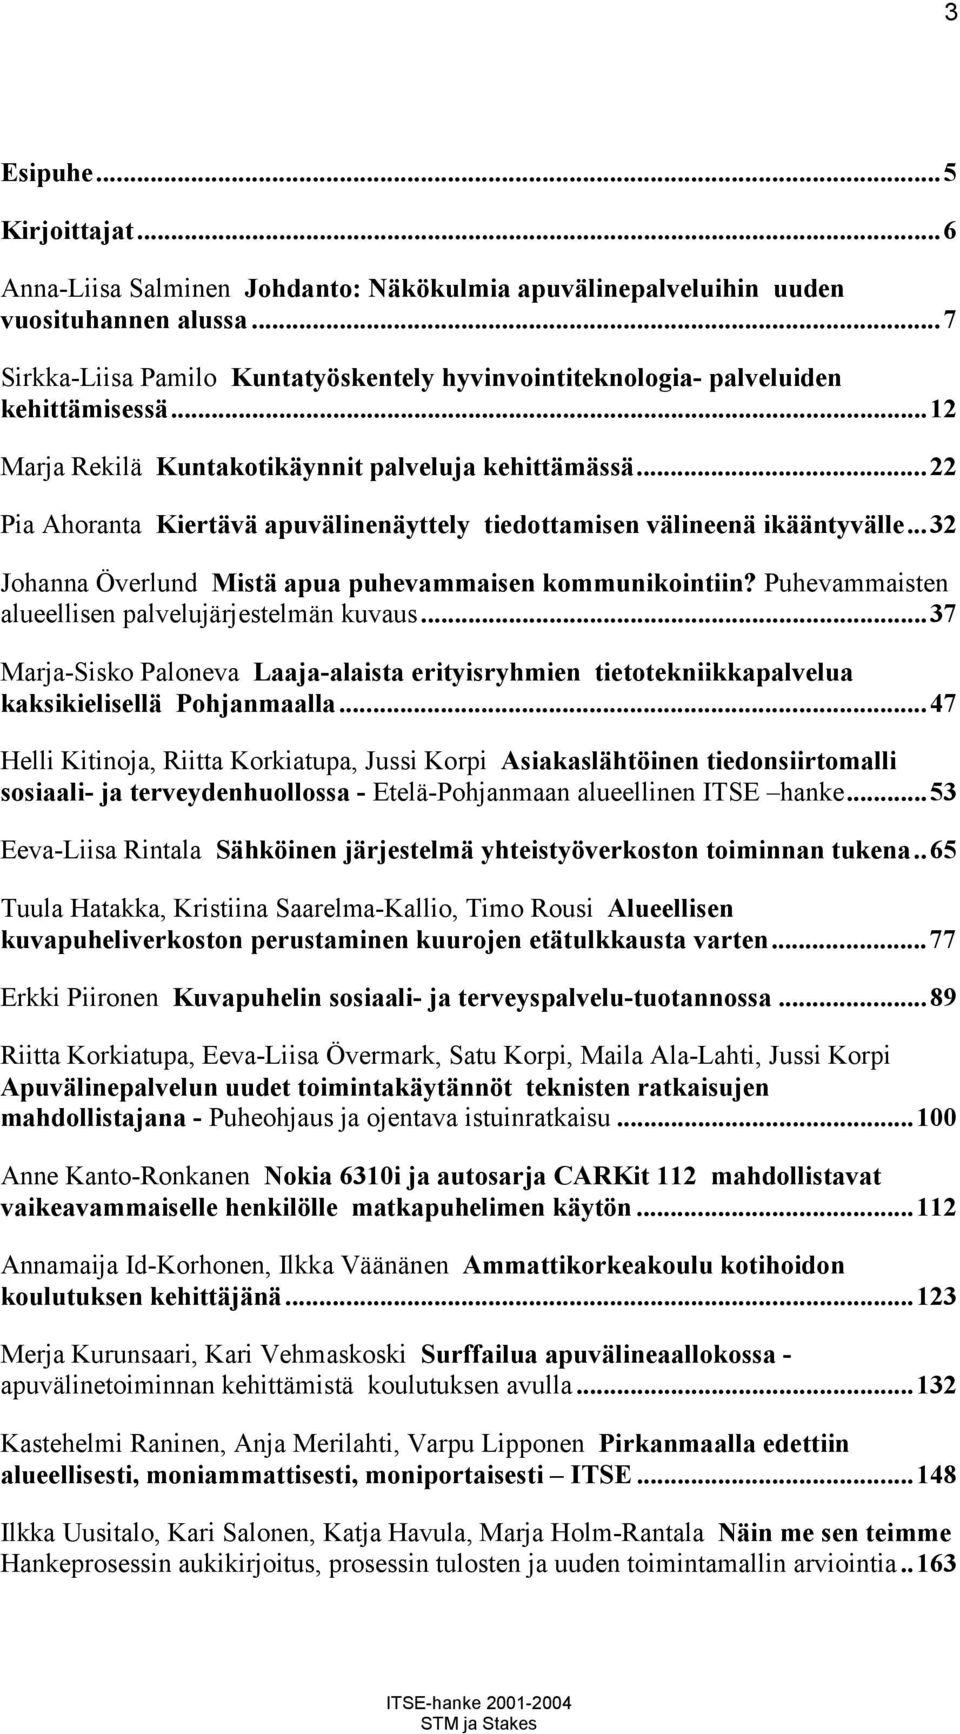 ..22 Pia Ahoranta Kiertävä apuvälinenäyttely tiedottamisen välineenä ikääntyvälle...32 Johanna Överlund Mistä apua puhevammaisen kommunikointiin? Puhevammaisten alueellisen palvelujärjestelmän kuvaus.